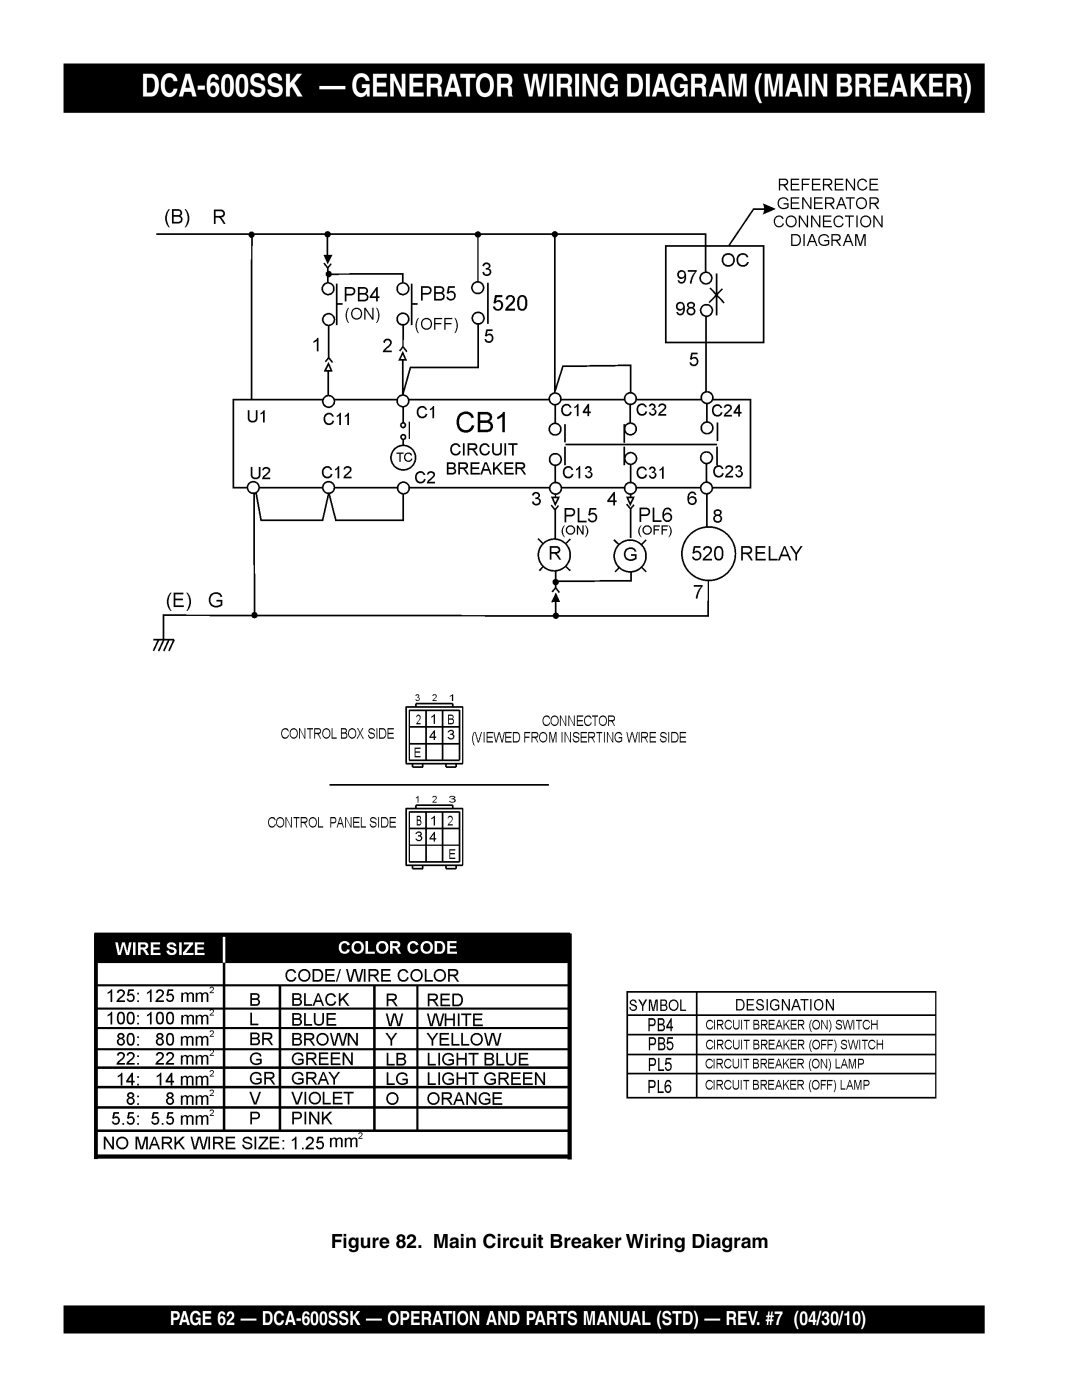 Multiquip operation manual DCA-600SSK - GENERATOR WIRING DIAGRAM MAIN BREAKER, Main Circuit Breaker Wiring Diagram 